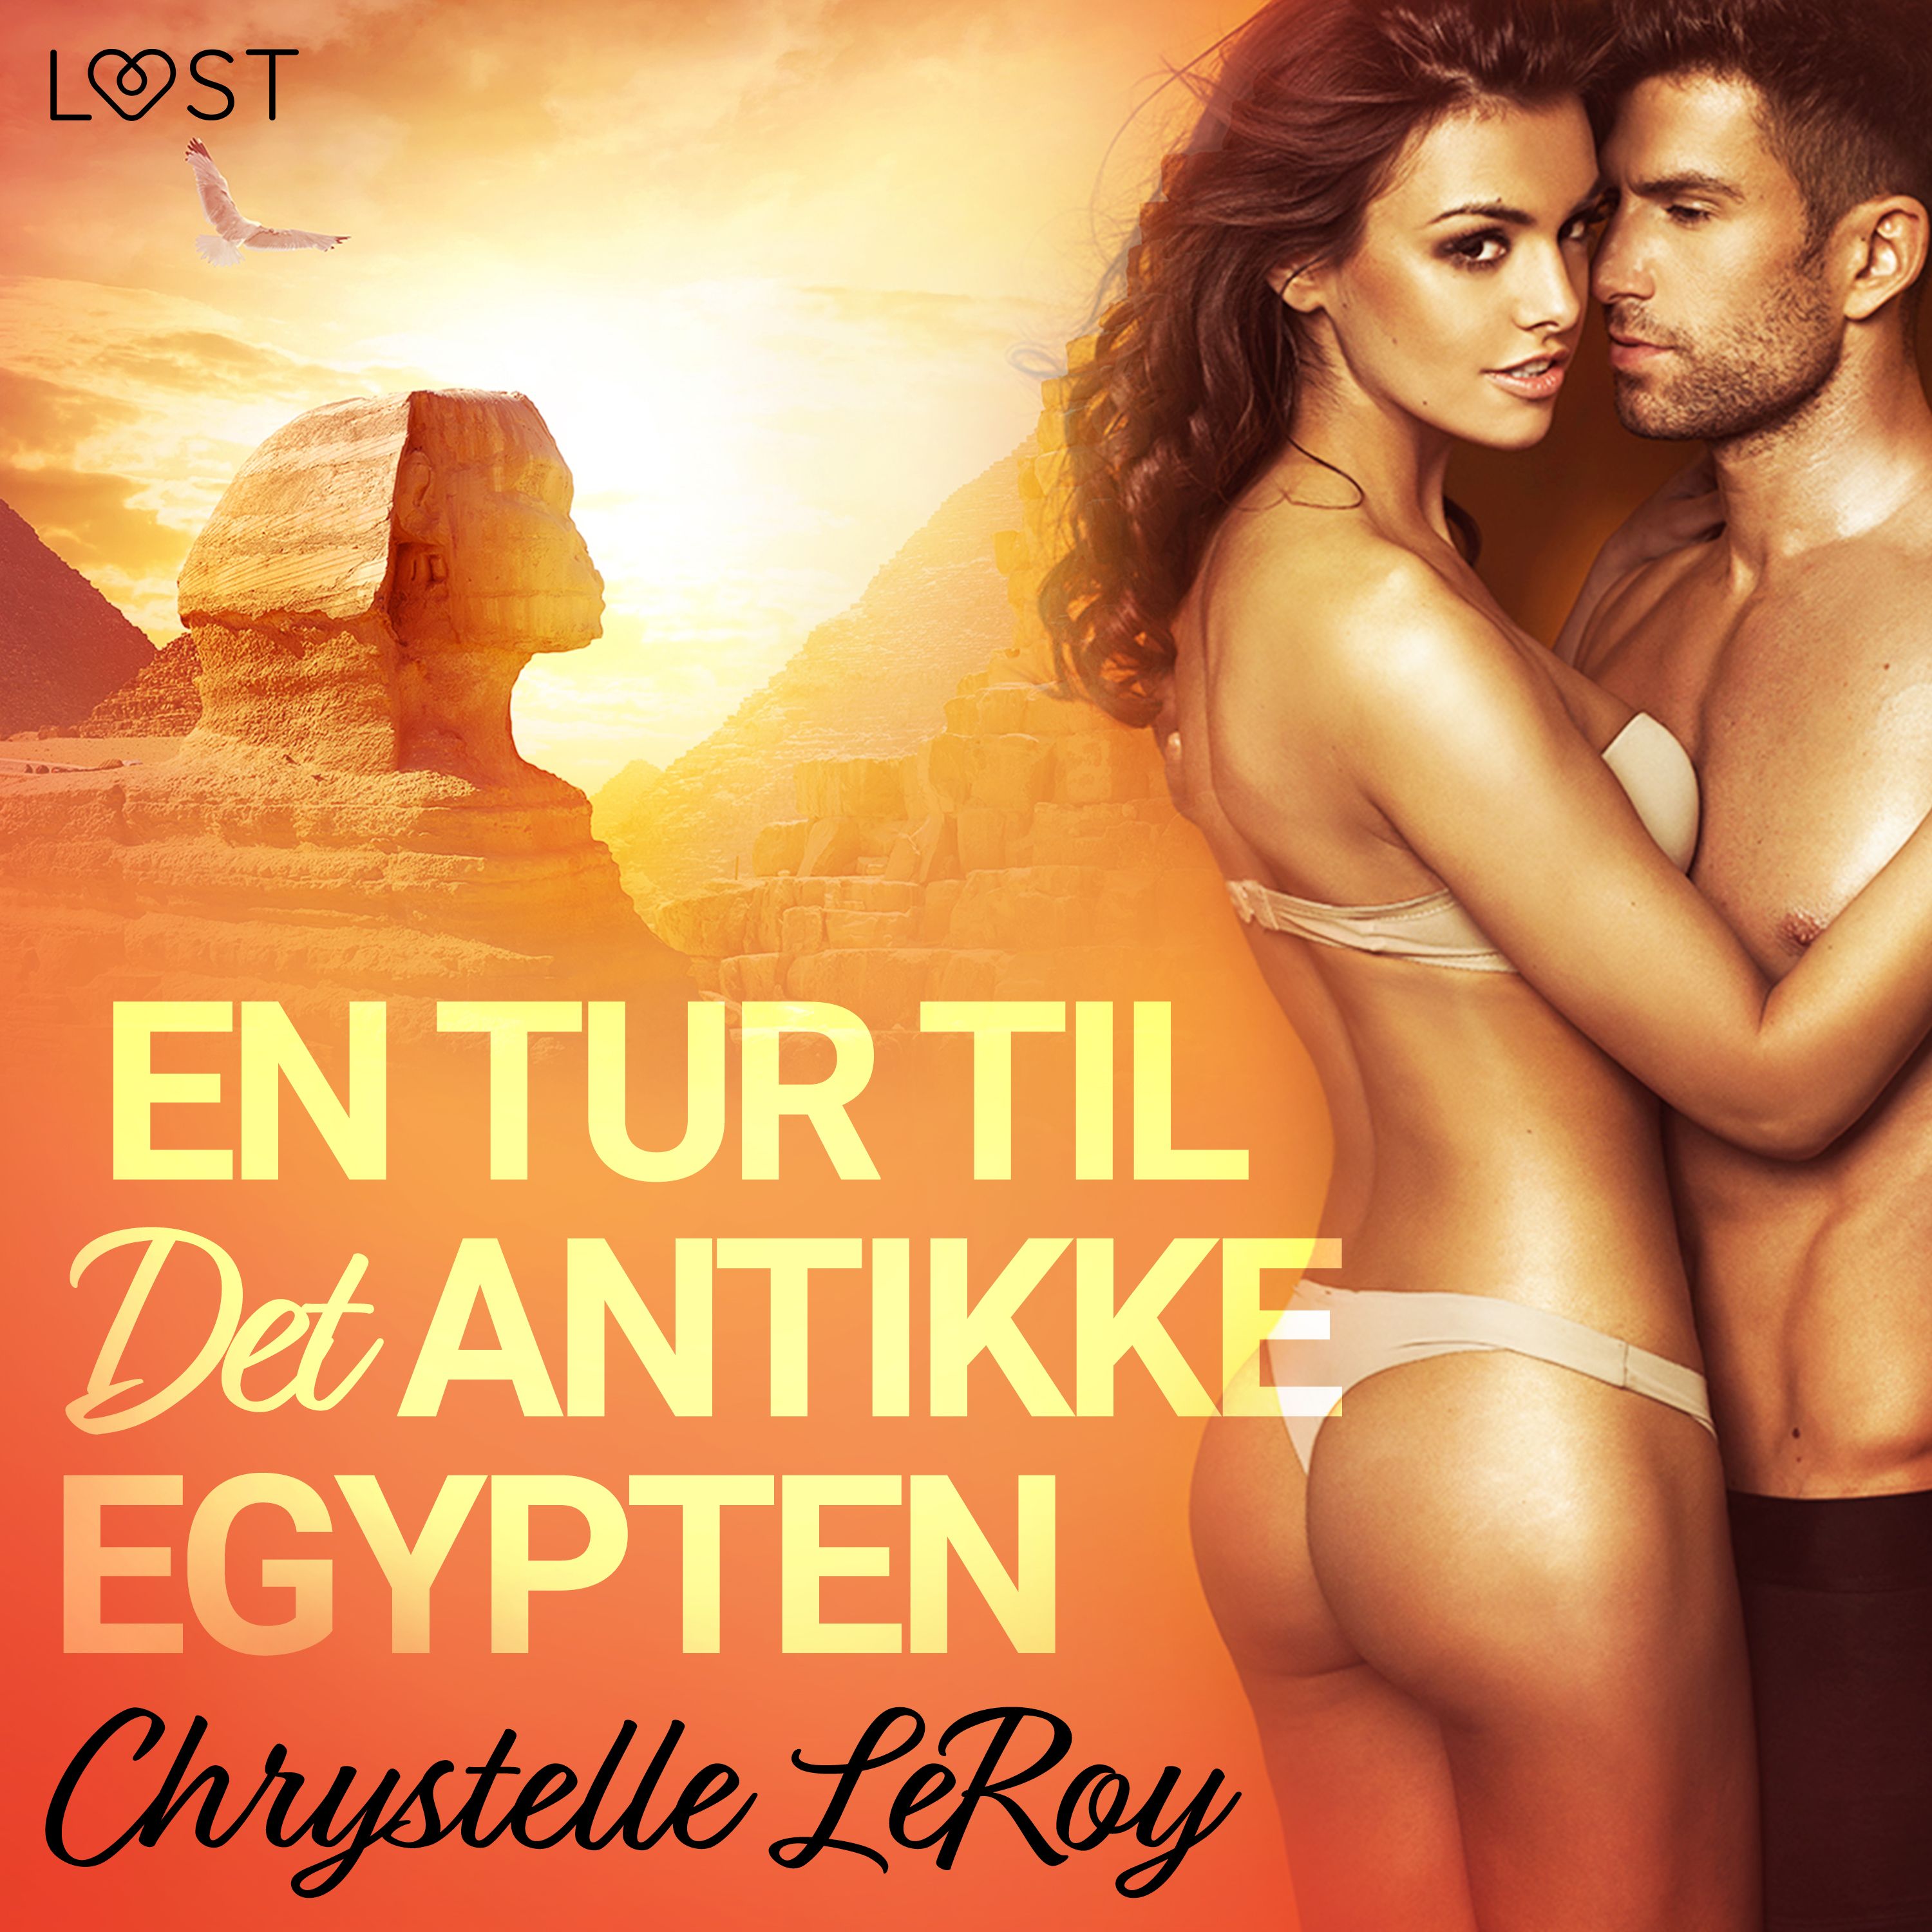 En Tur til Det Antikke Egypten - erotisk novelle, ljudbok av Chrystelle LeRoy